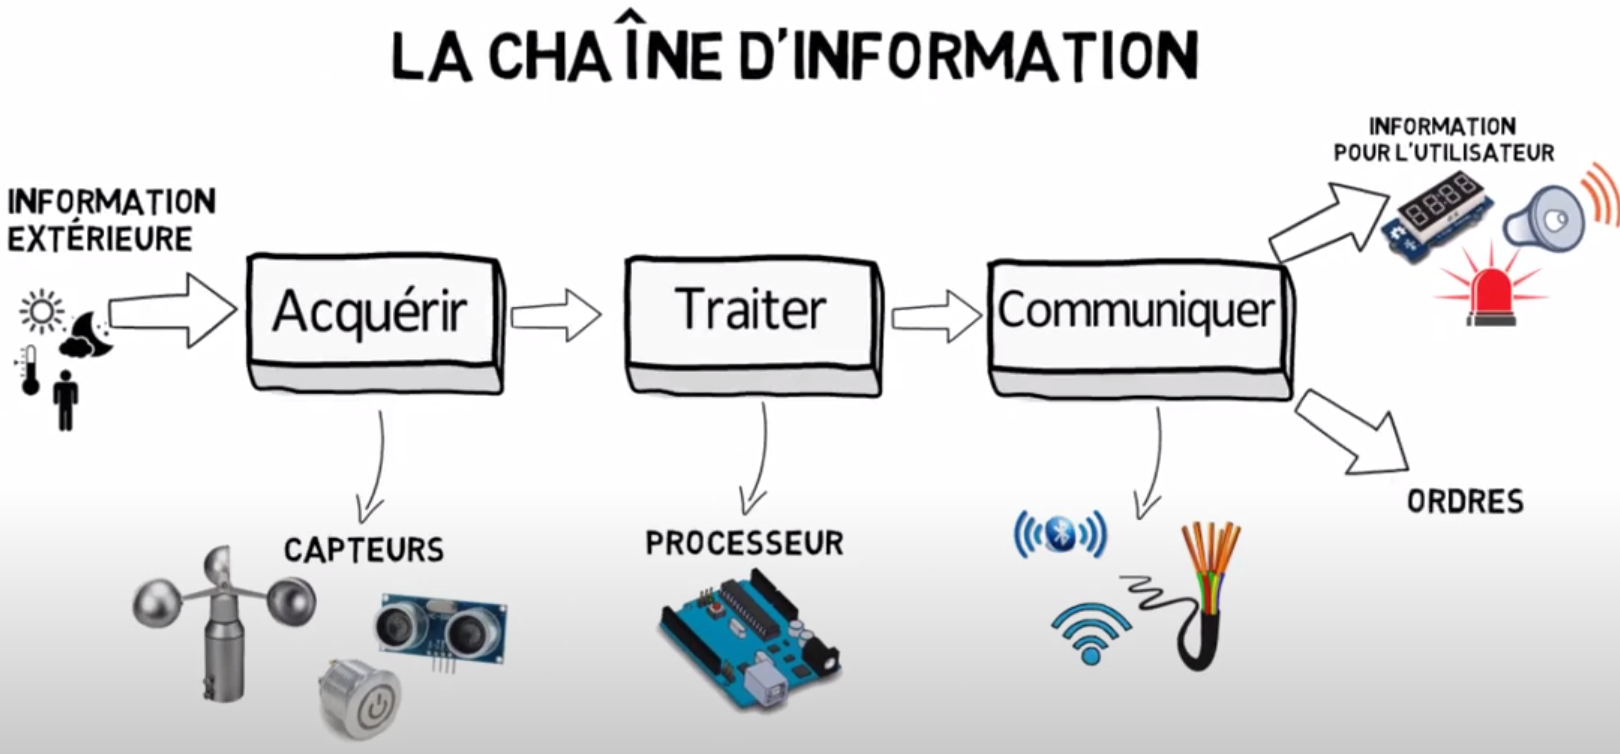 Chaine info